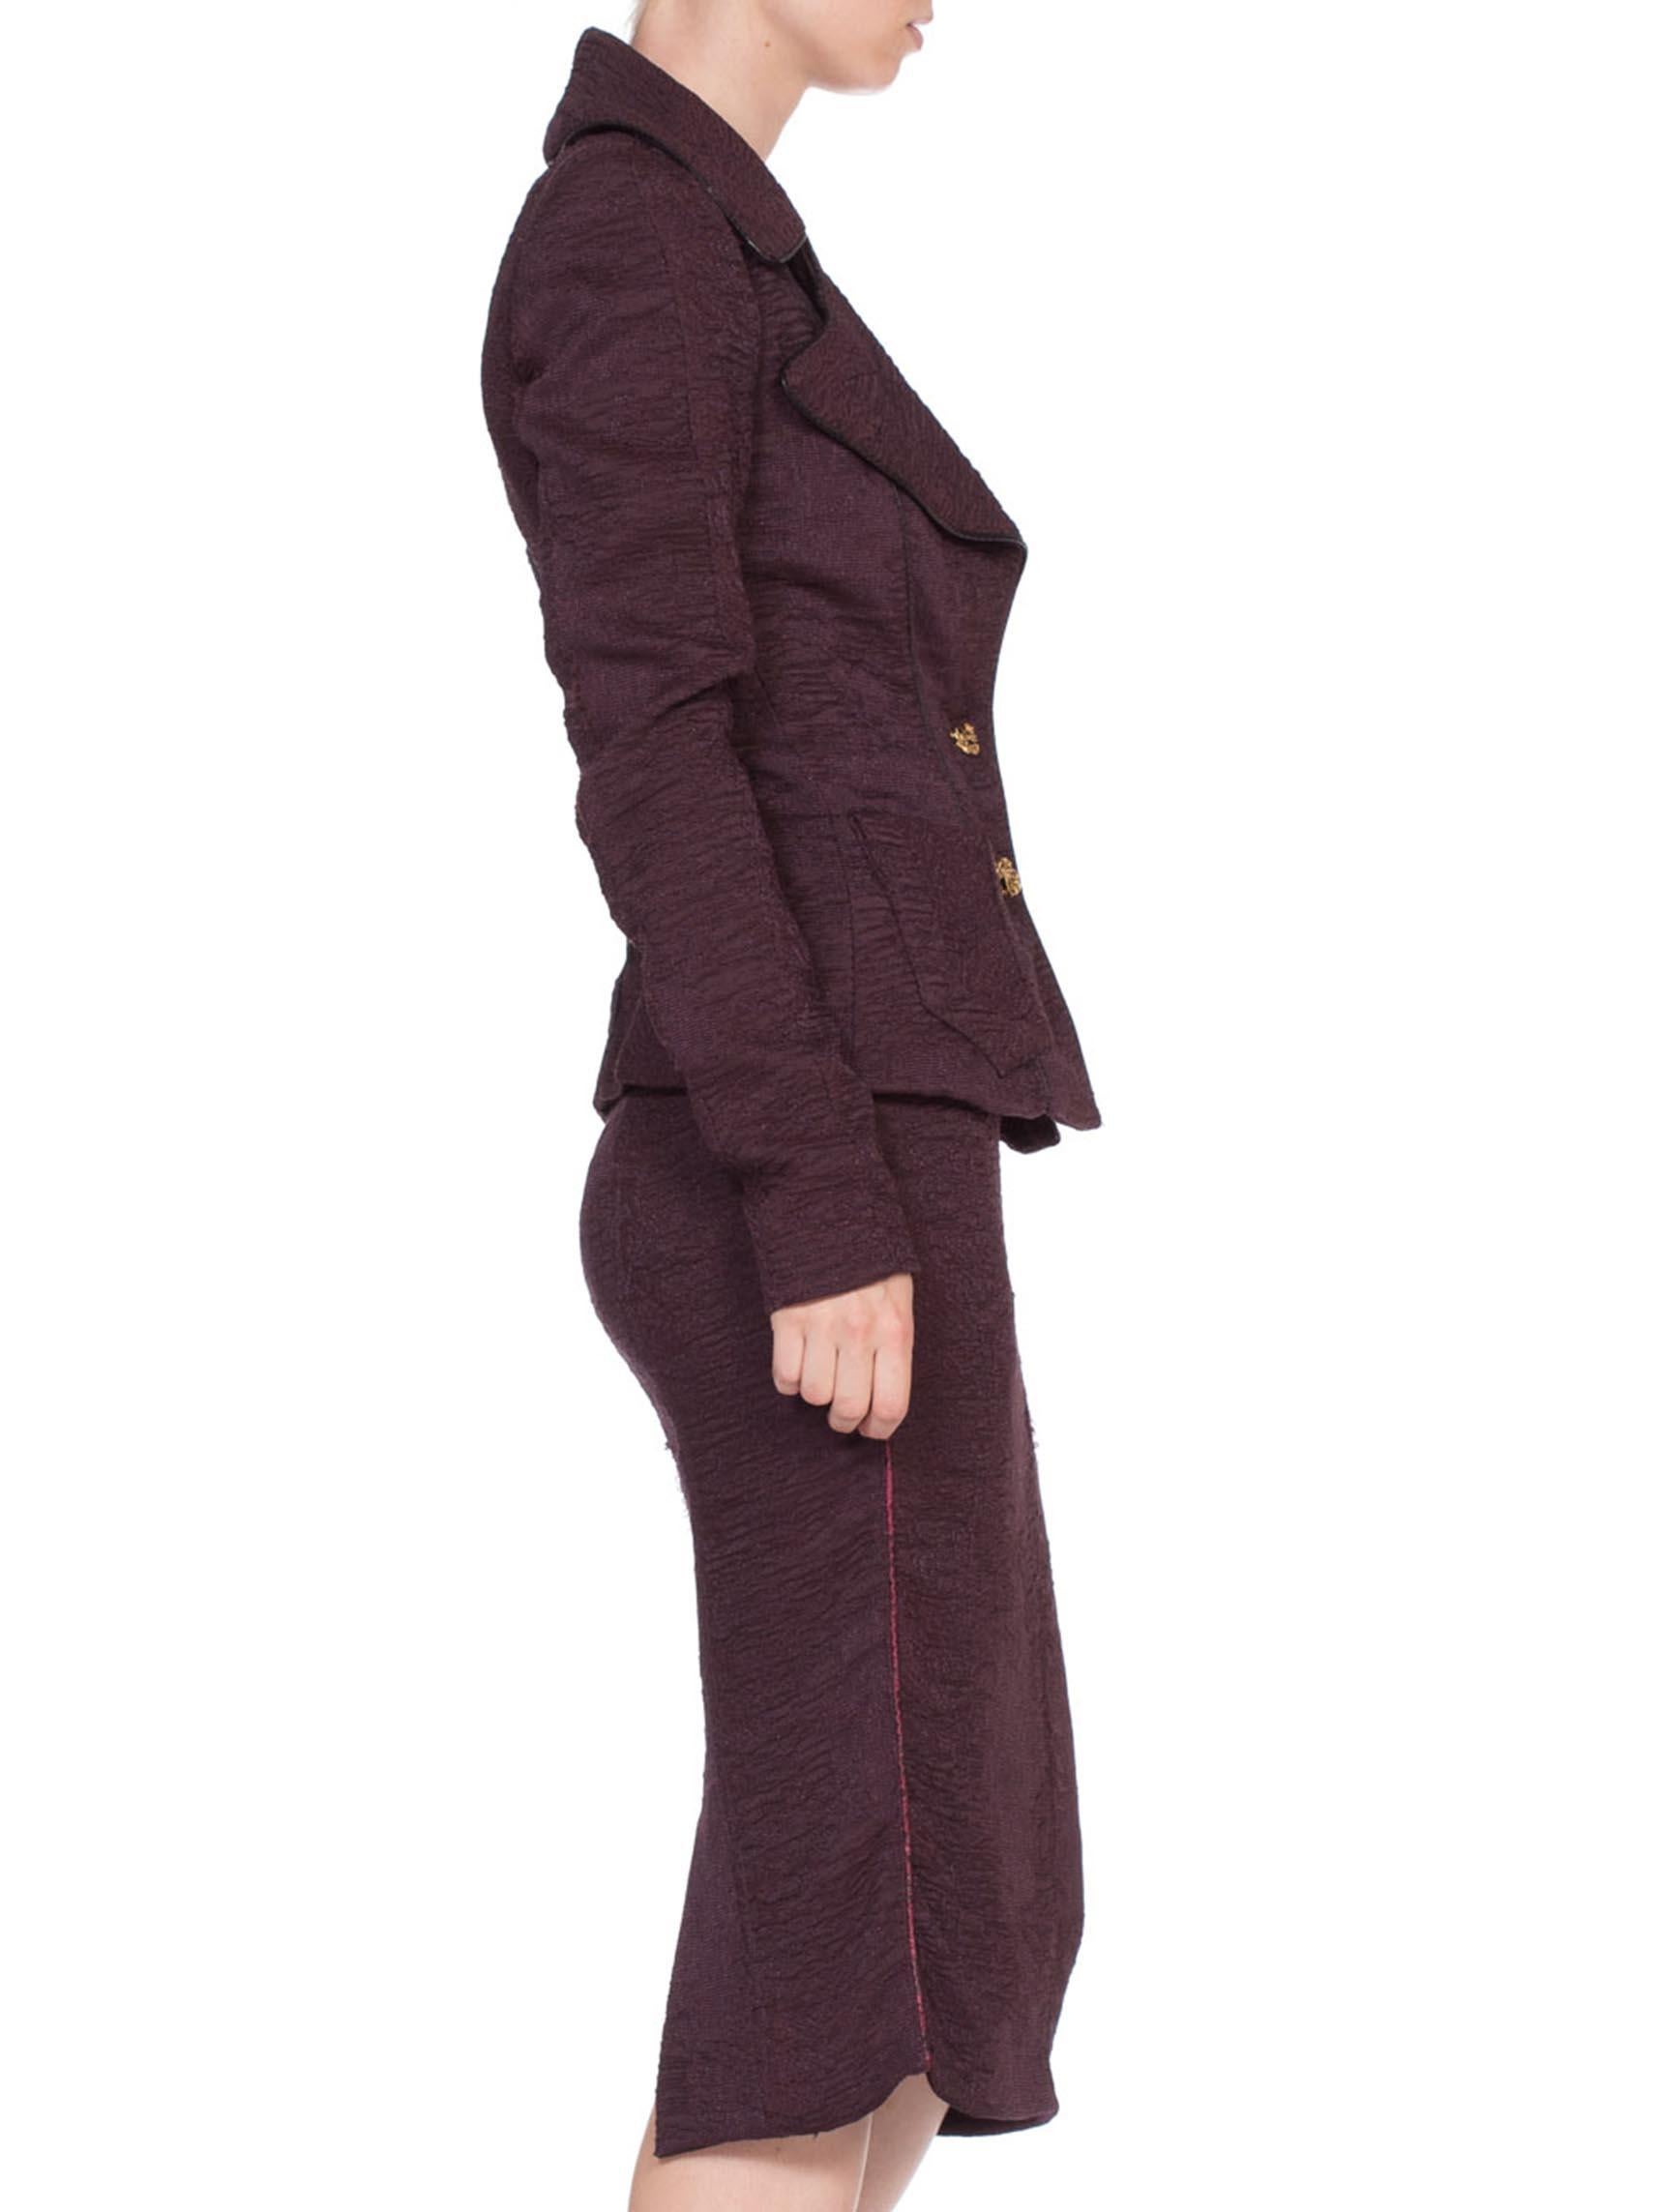 lavender skirt suit